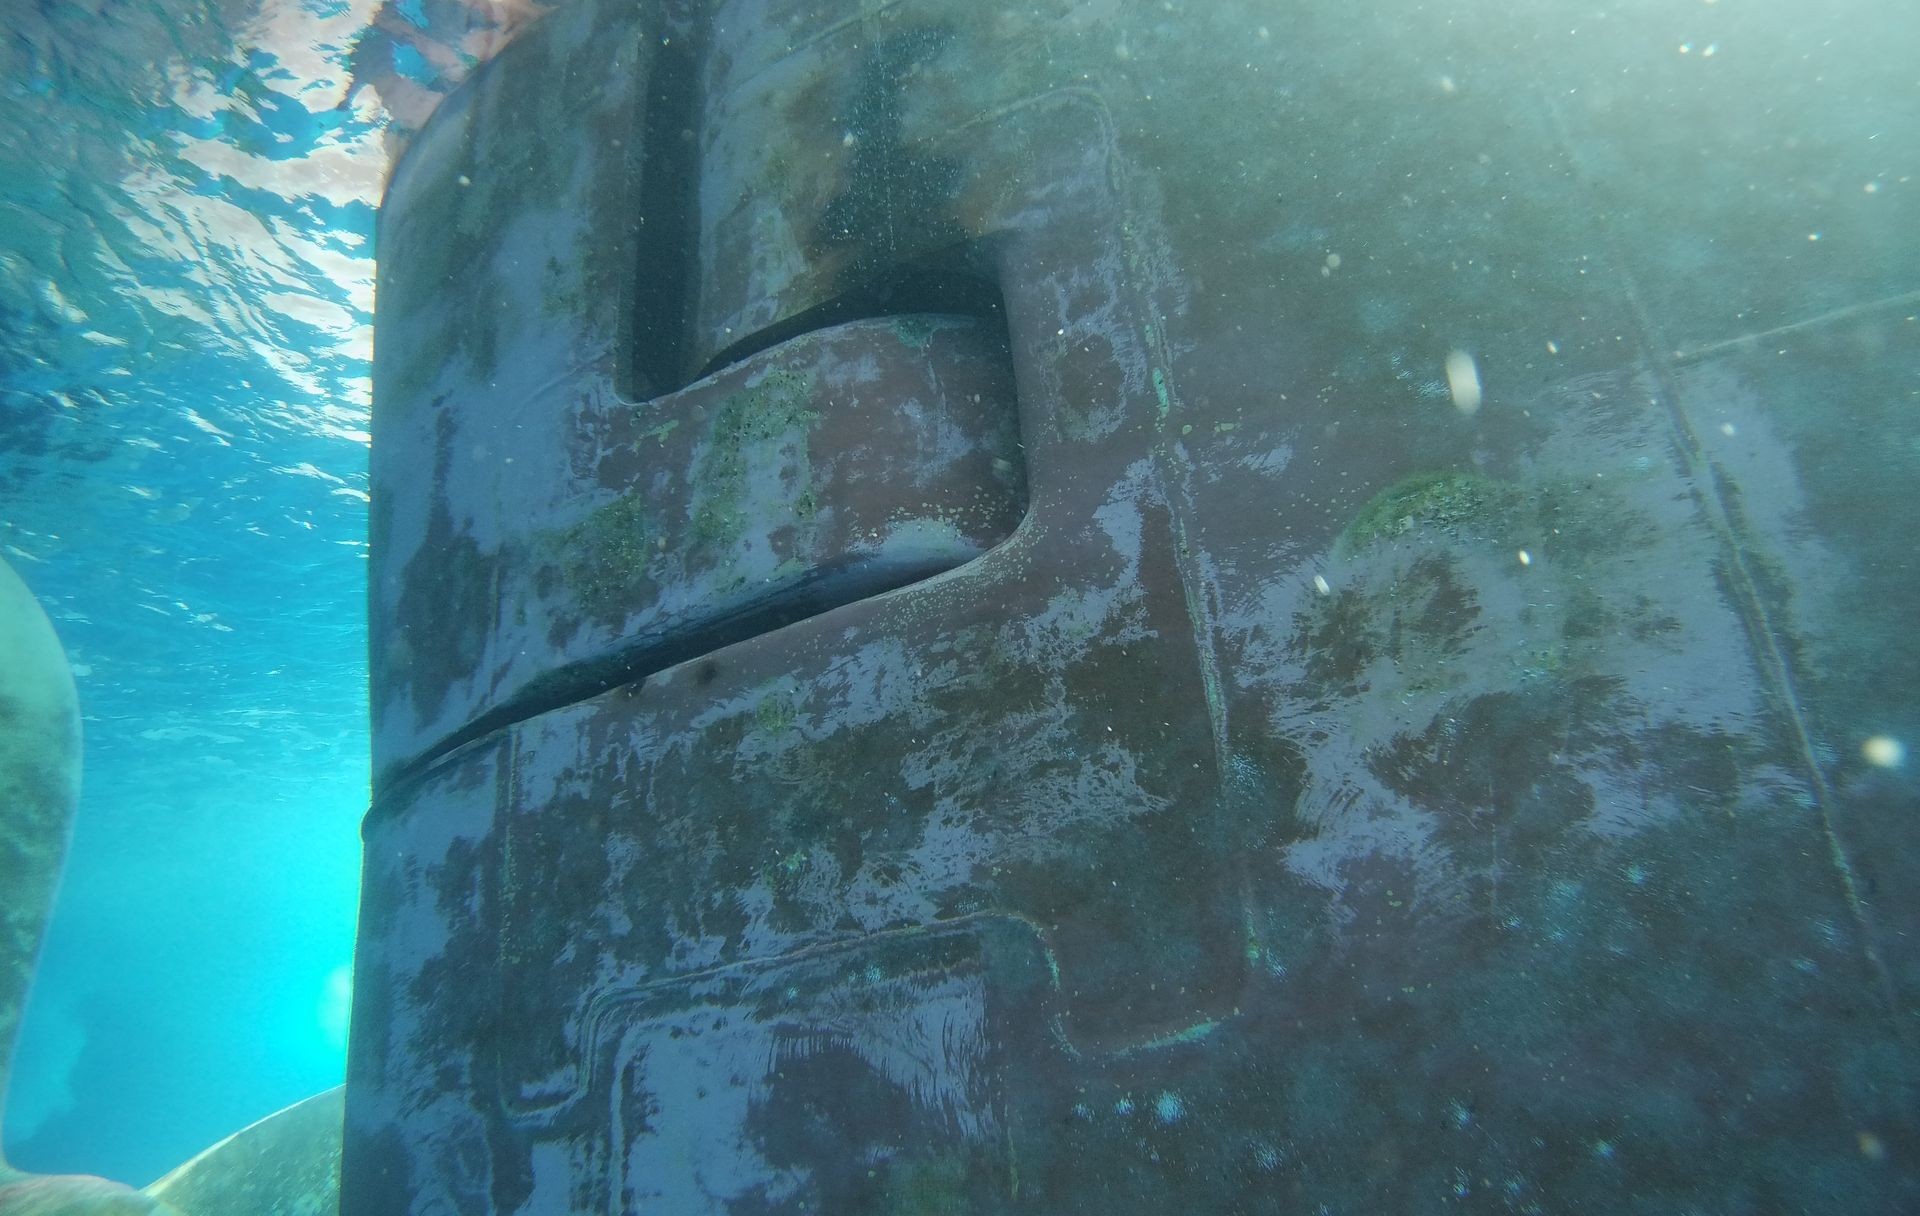 Underwater rudder cleaning